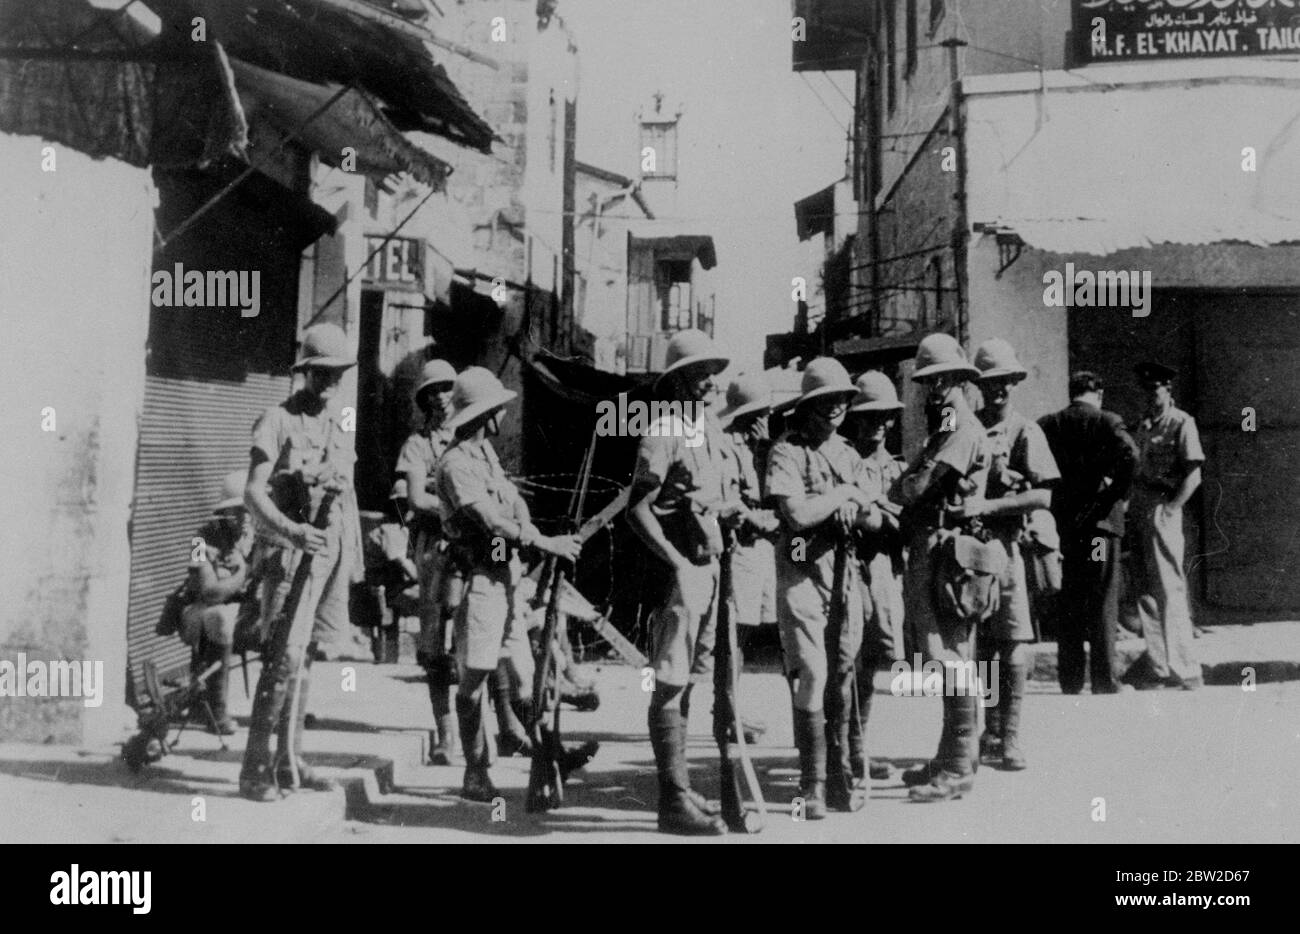 Soldati britannici in guardia vicino alla porta di Jaffa per la città vecchia di Gerusalemme. Questo è stato dichiarato il punto più lontano della rioccupazione britannica della città vecchia. Al di là di essa i terroristi sono ancora protetti dal labirinto di strade strette e passaggi sotterranei. 26 ottobre 1938 Foto Stock